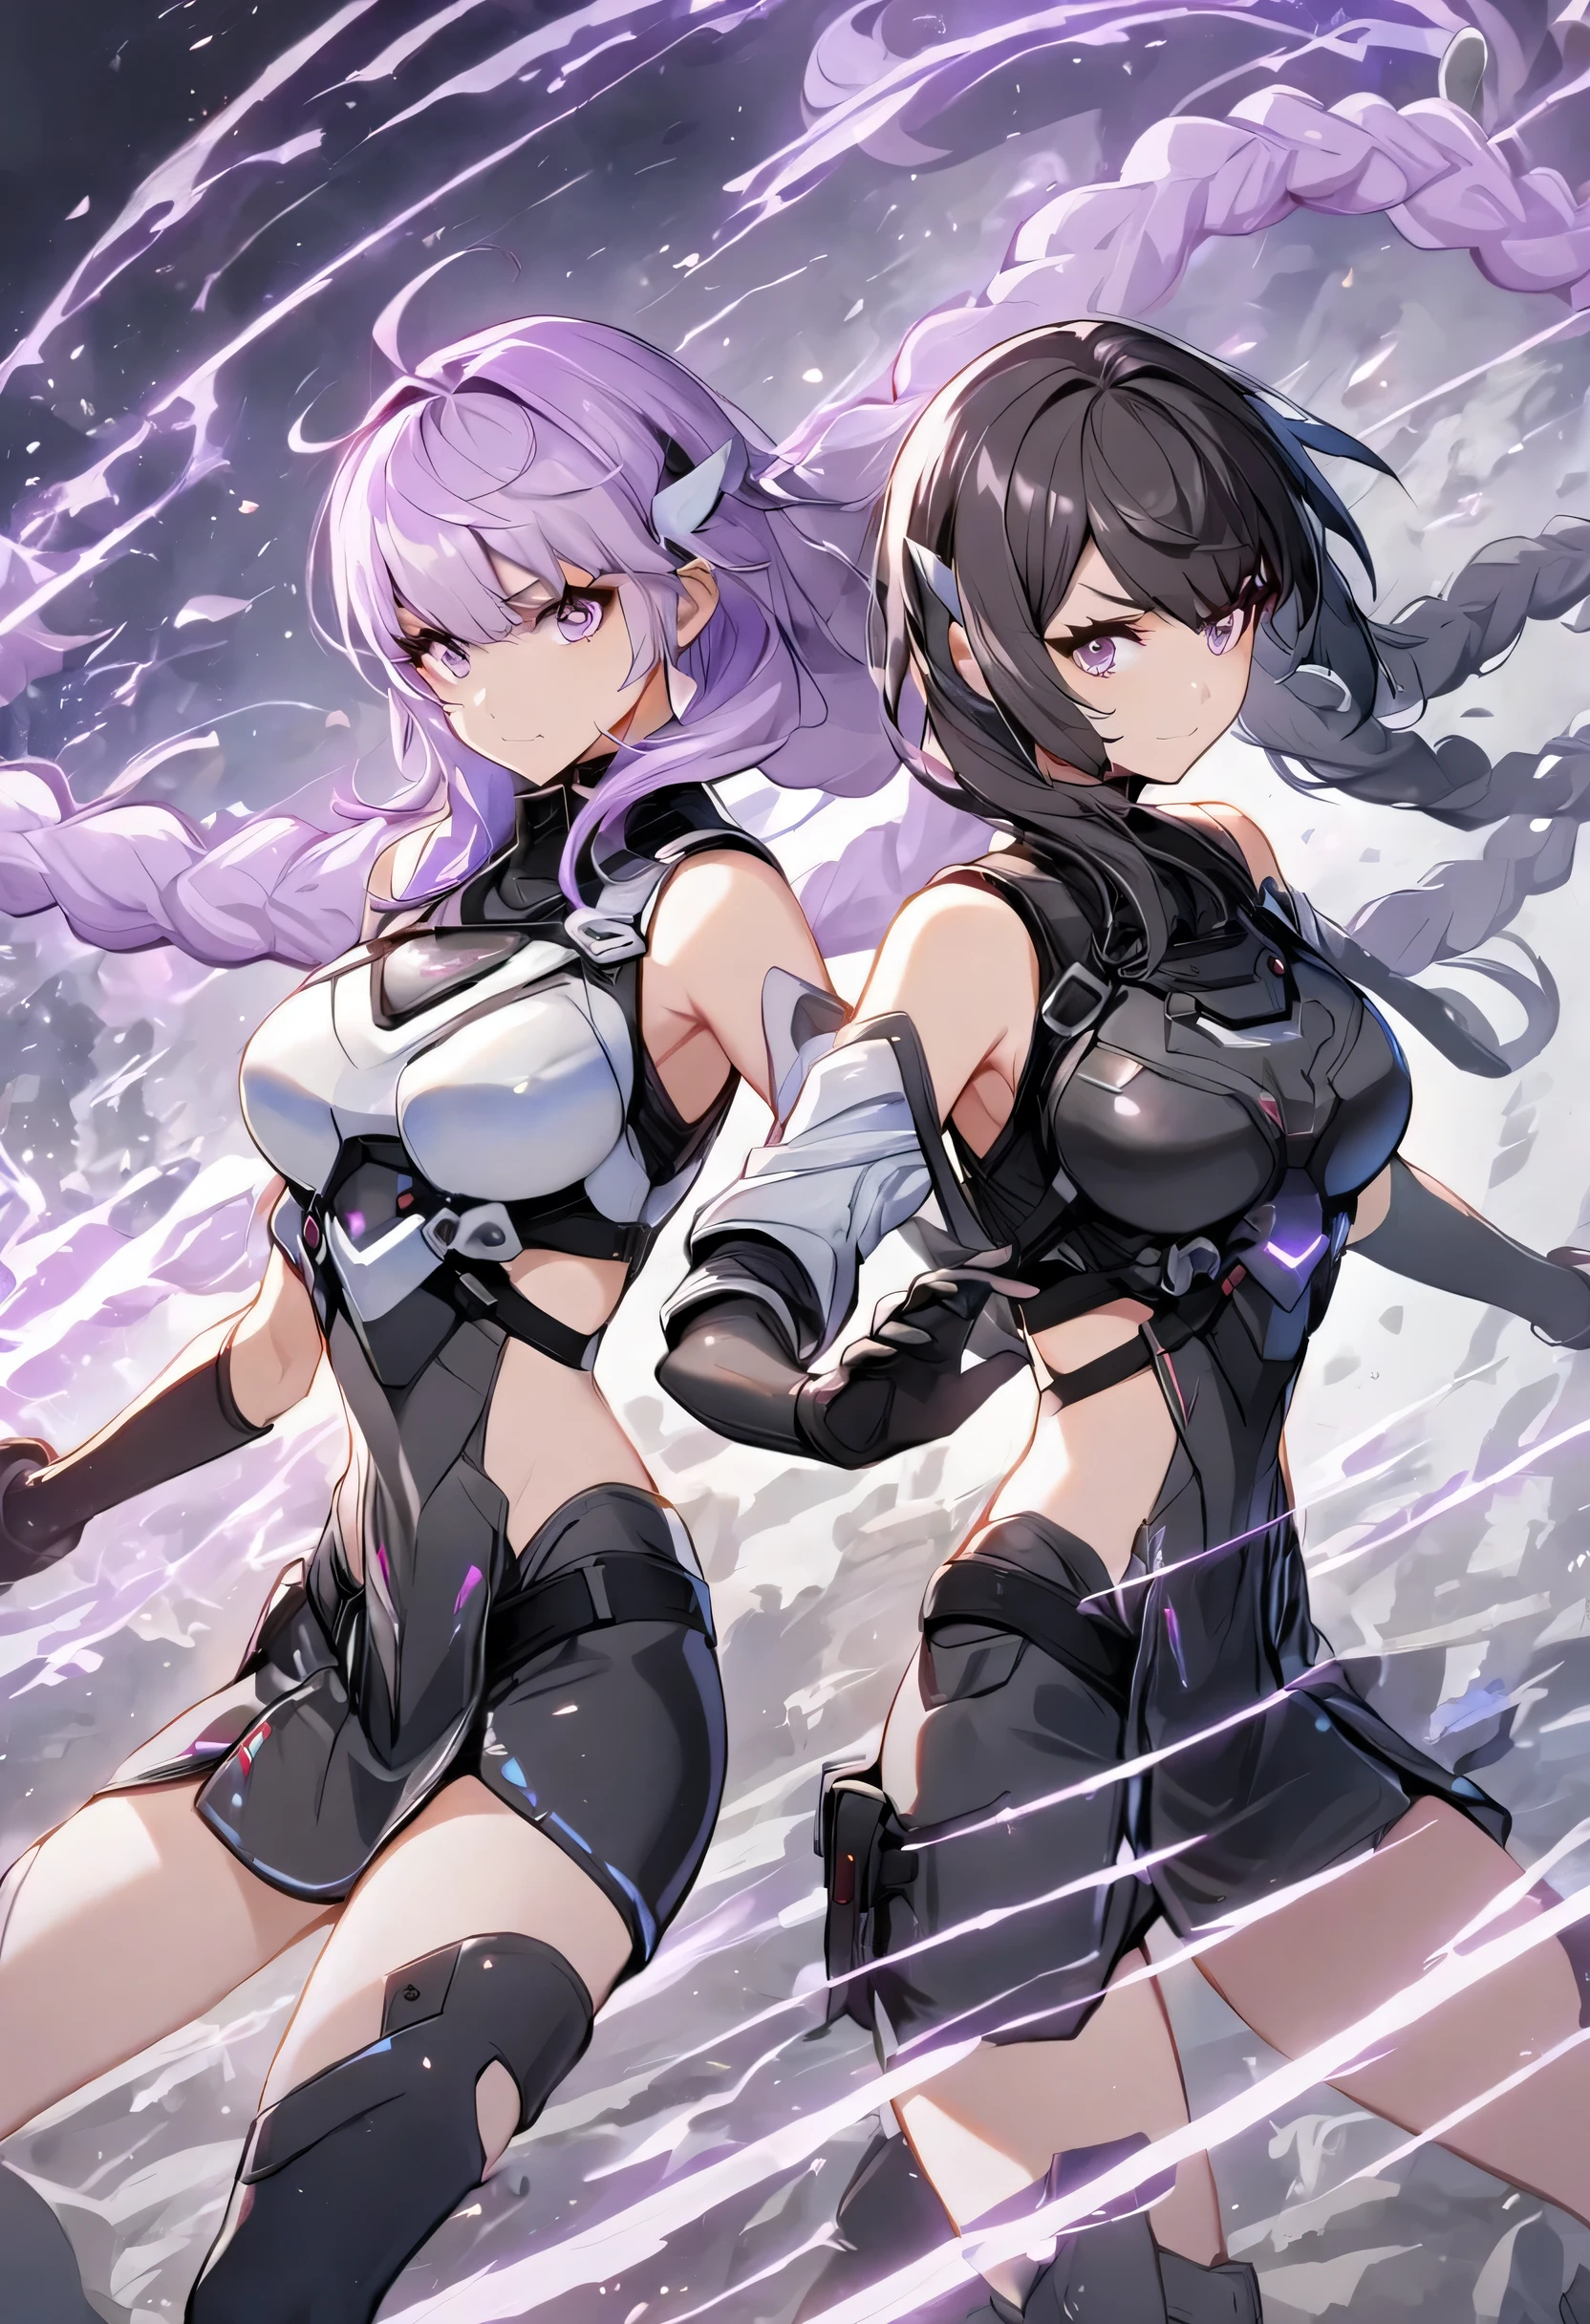  2 女孩 ,黑色衣服,白色衣服, 黑髮, 紫色頭髮,並肩作戰